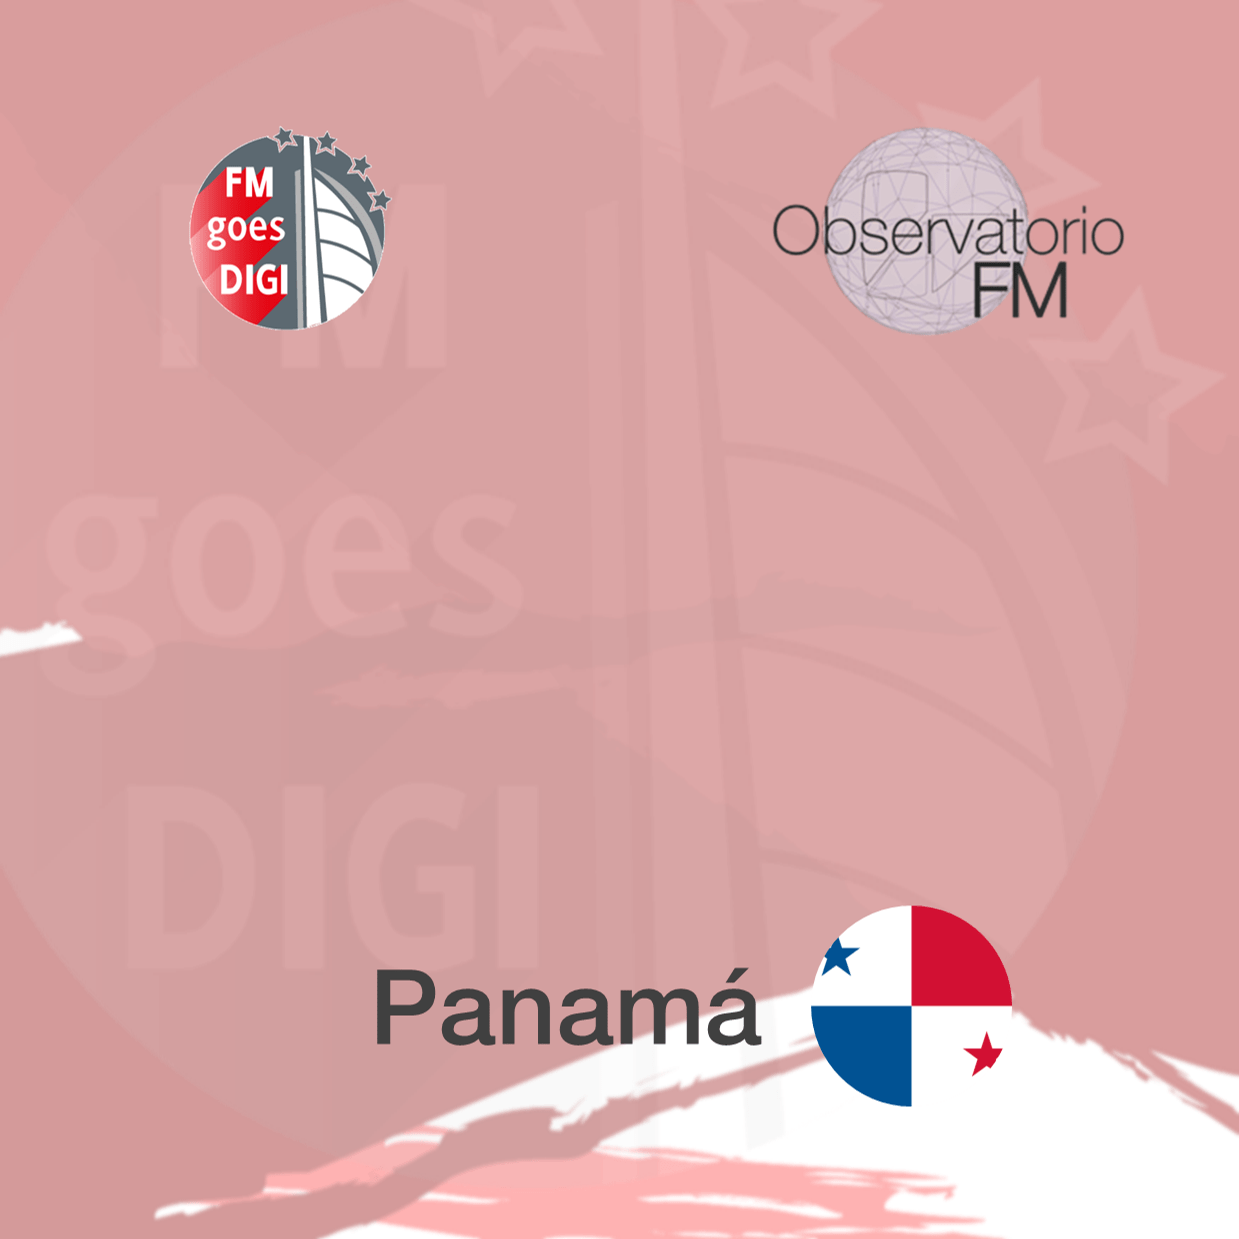 FMgoesDIGI_Panama